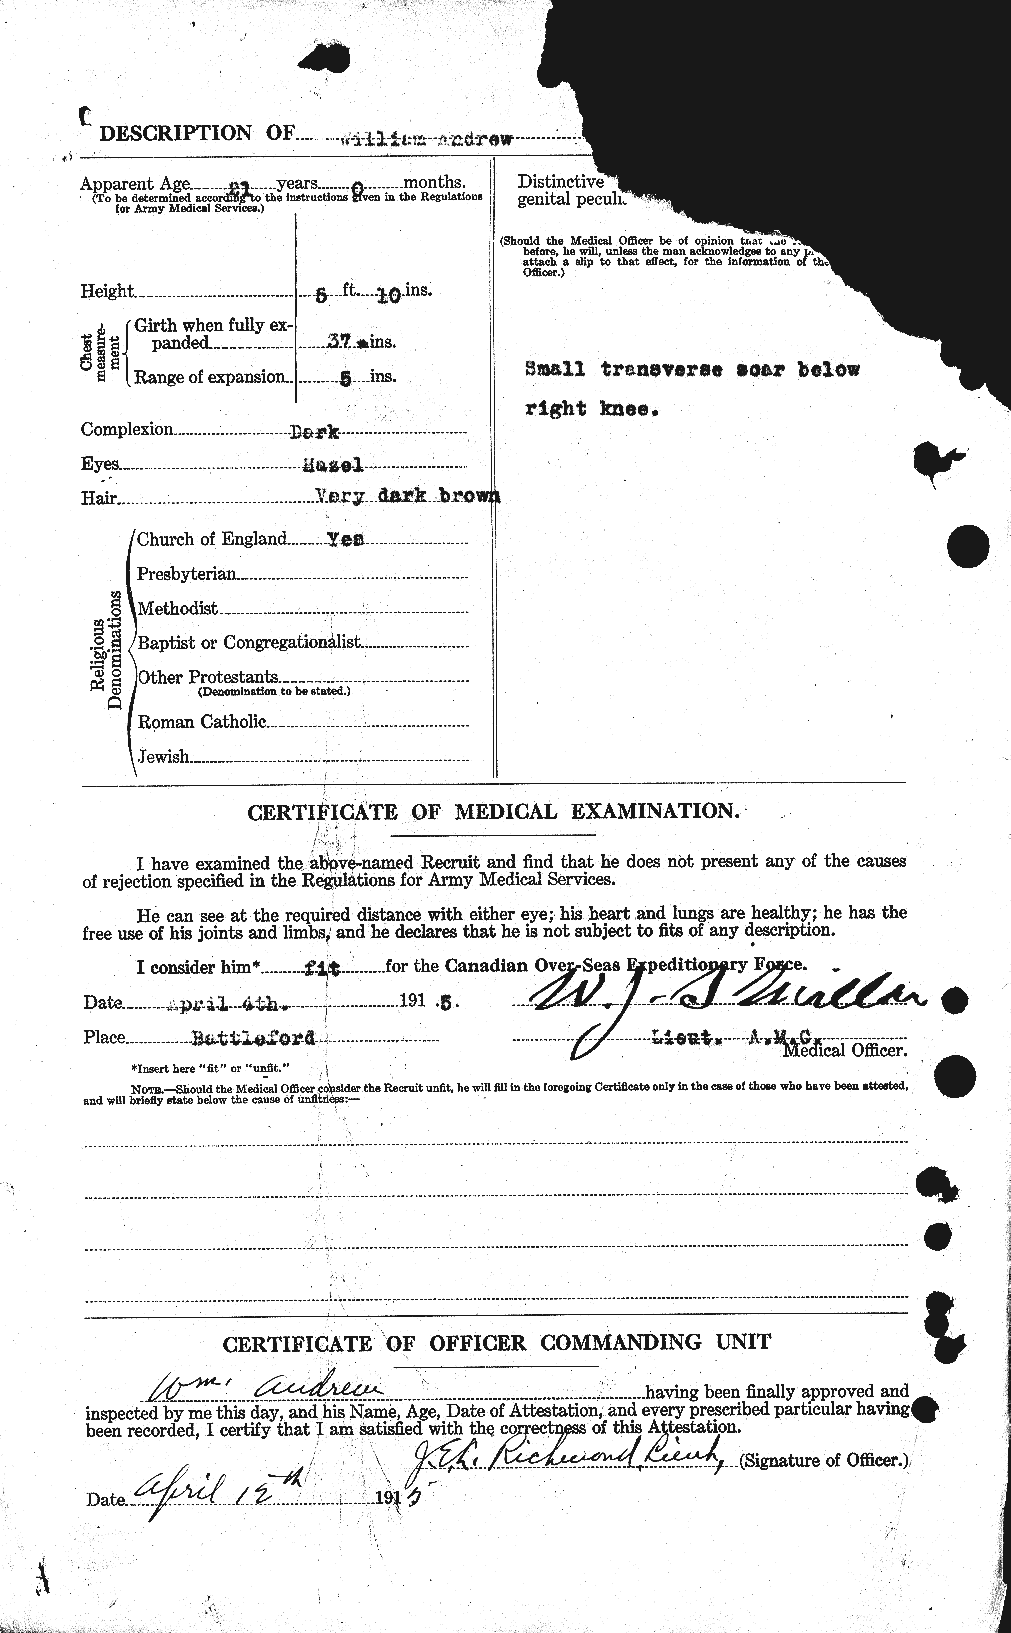 Dossiers du Personnel de la Première Guerre mondiale - CEC 210475b